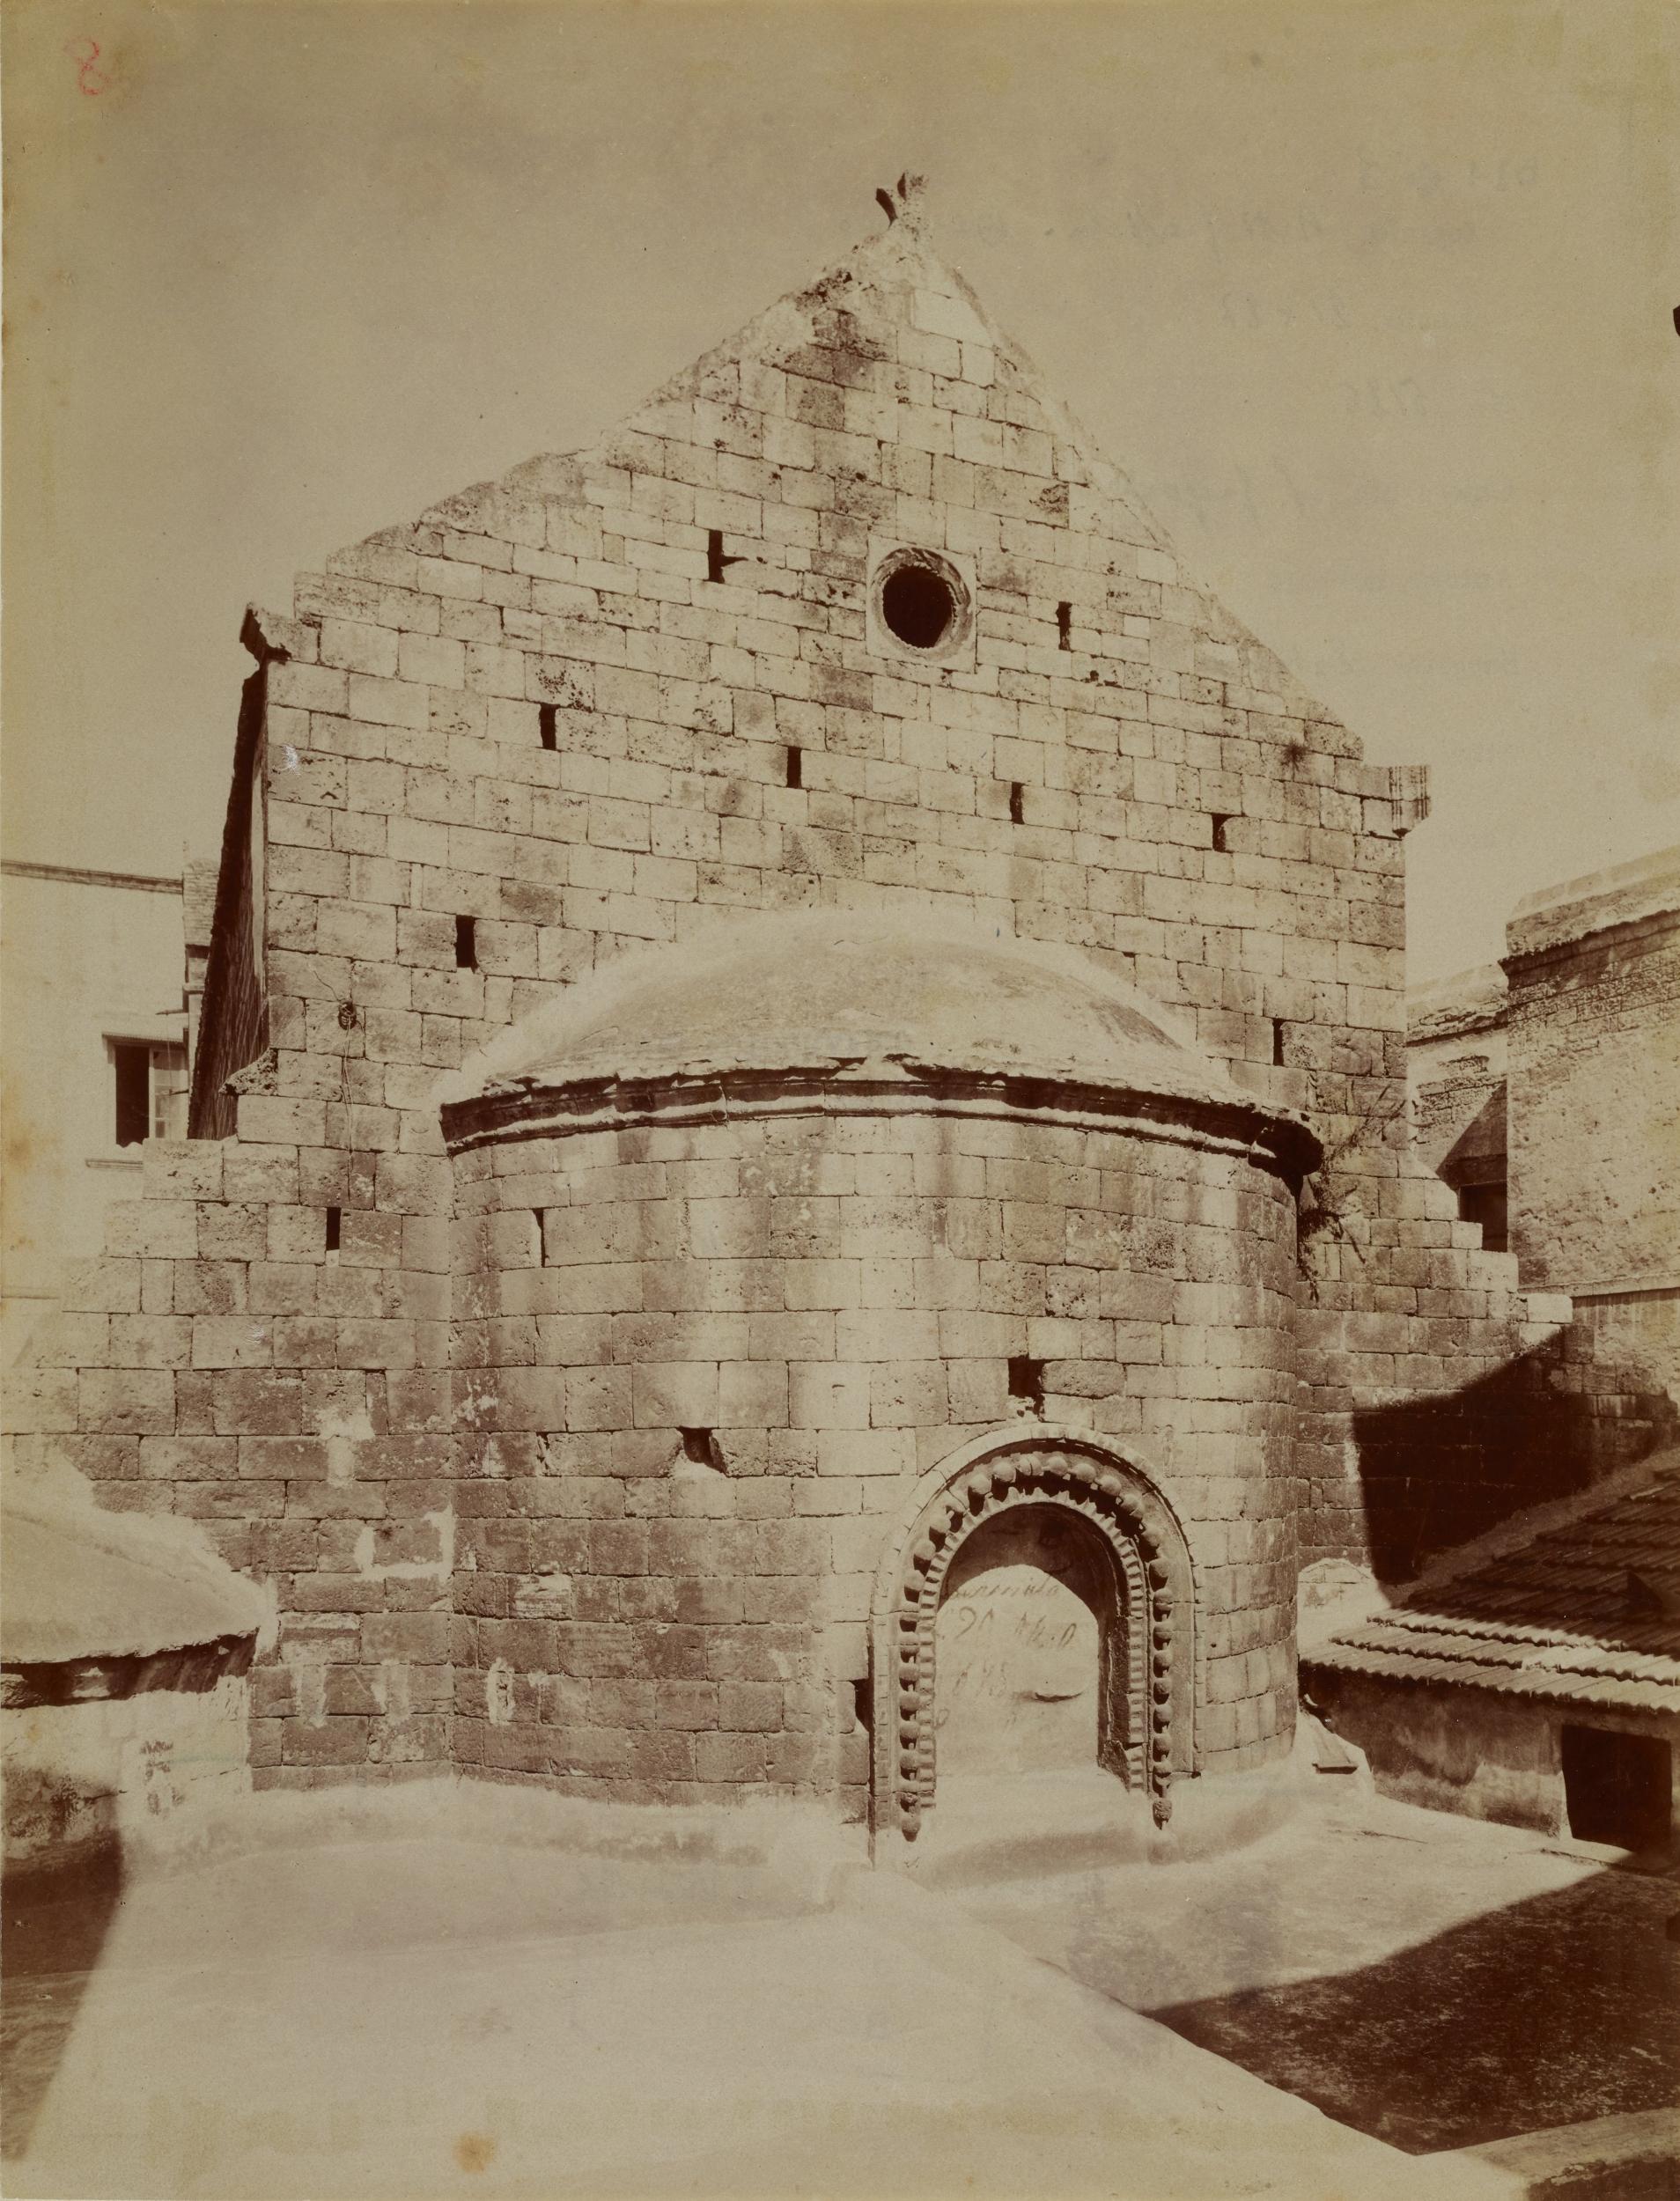 Fotografo non identificato, Bari - Chiesa di S. Gregorio, tabernacolo, 1915, gelatina ai sali d'argento/carta, MPI136715